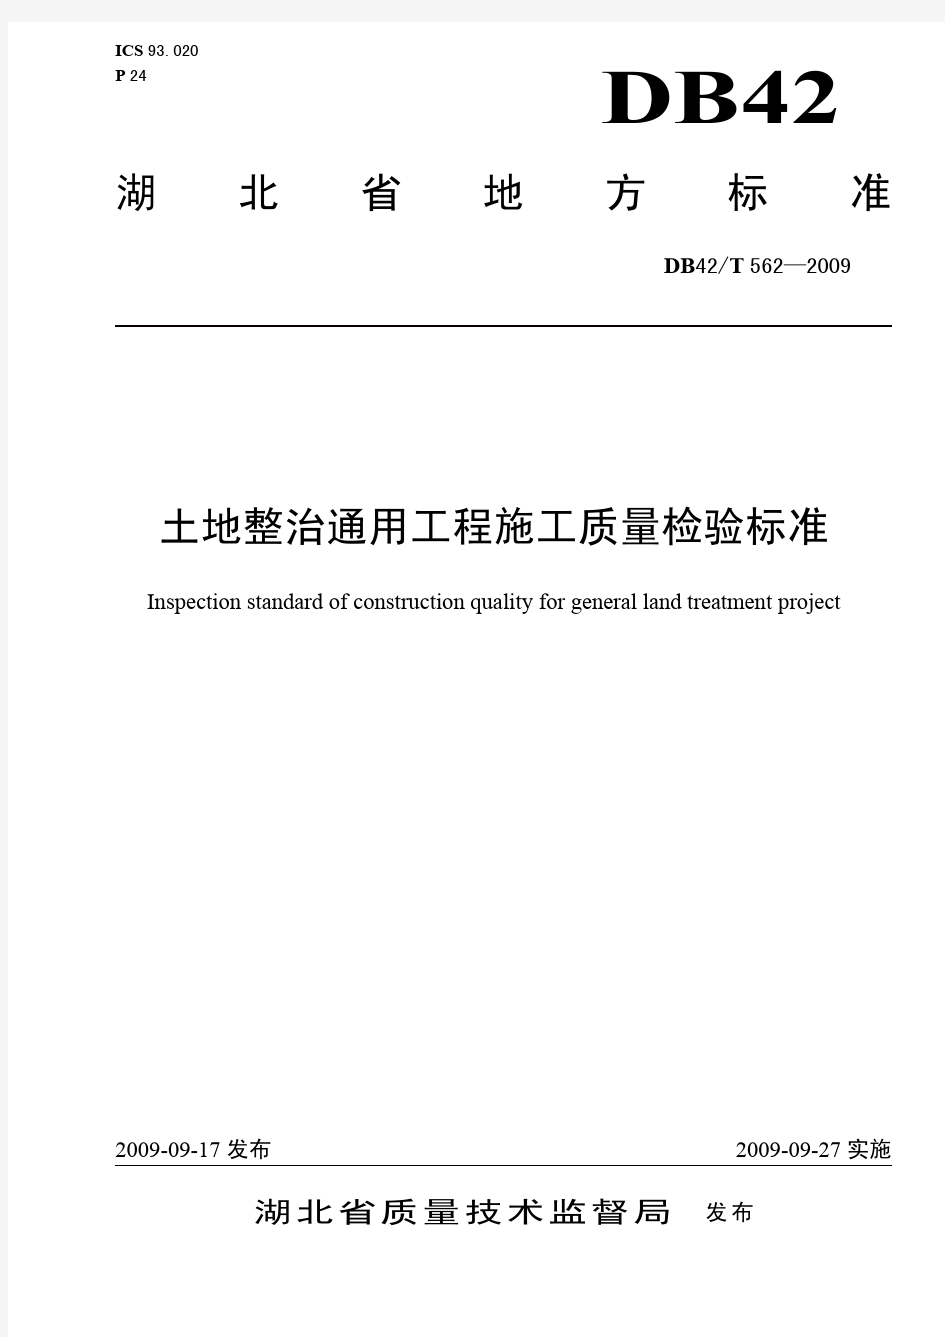 《湖北省土地整治通用工程施工质量检验标准》(DB42T 562—2009)